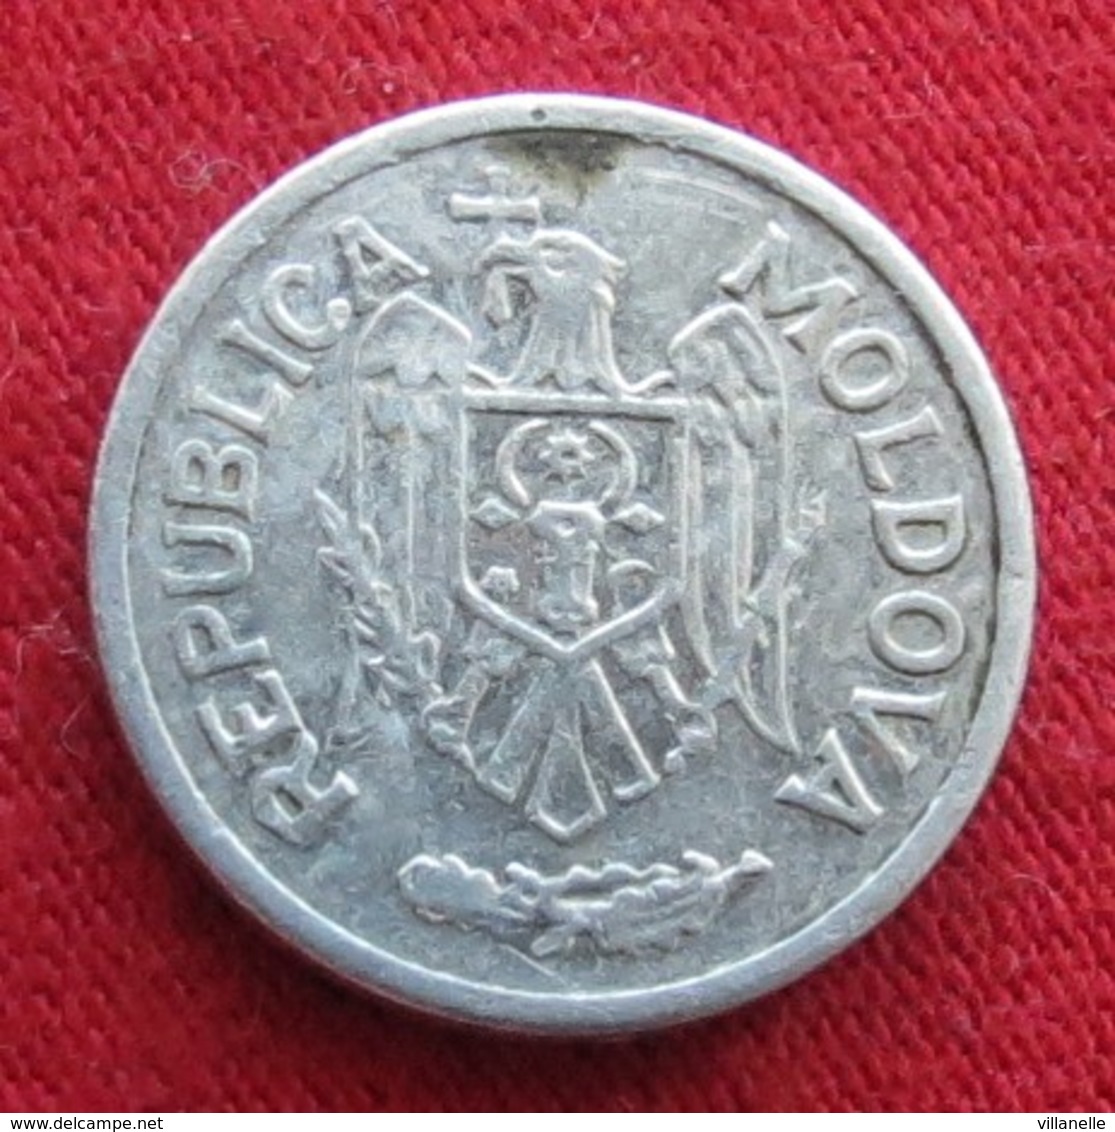 Moldova 5 Bani 2000 KM# 2  Moldavia Moldavie - Moldavie